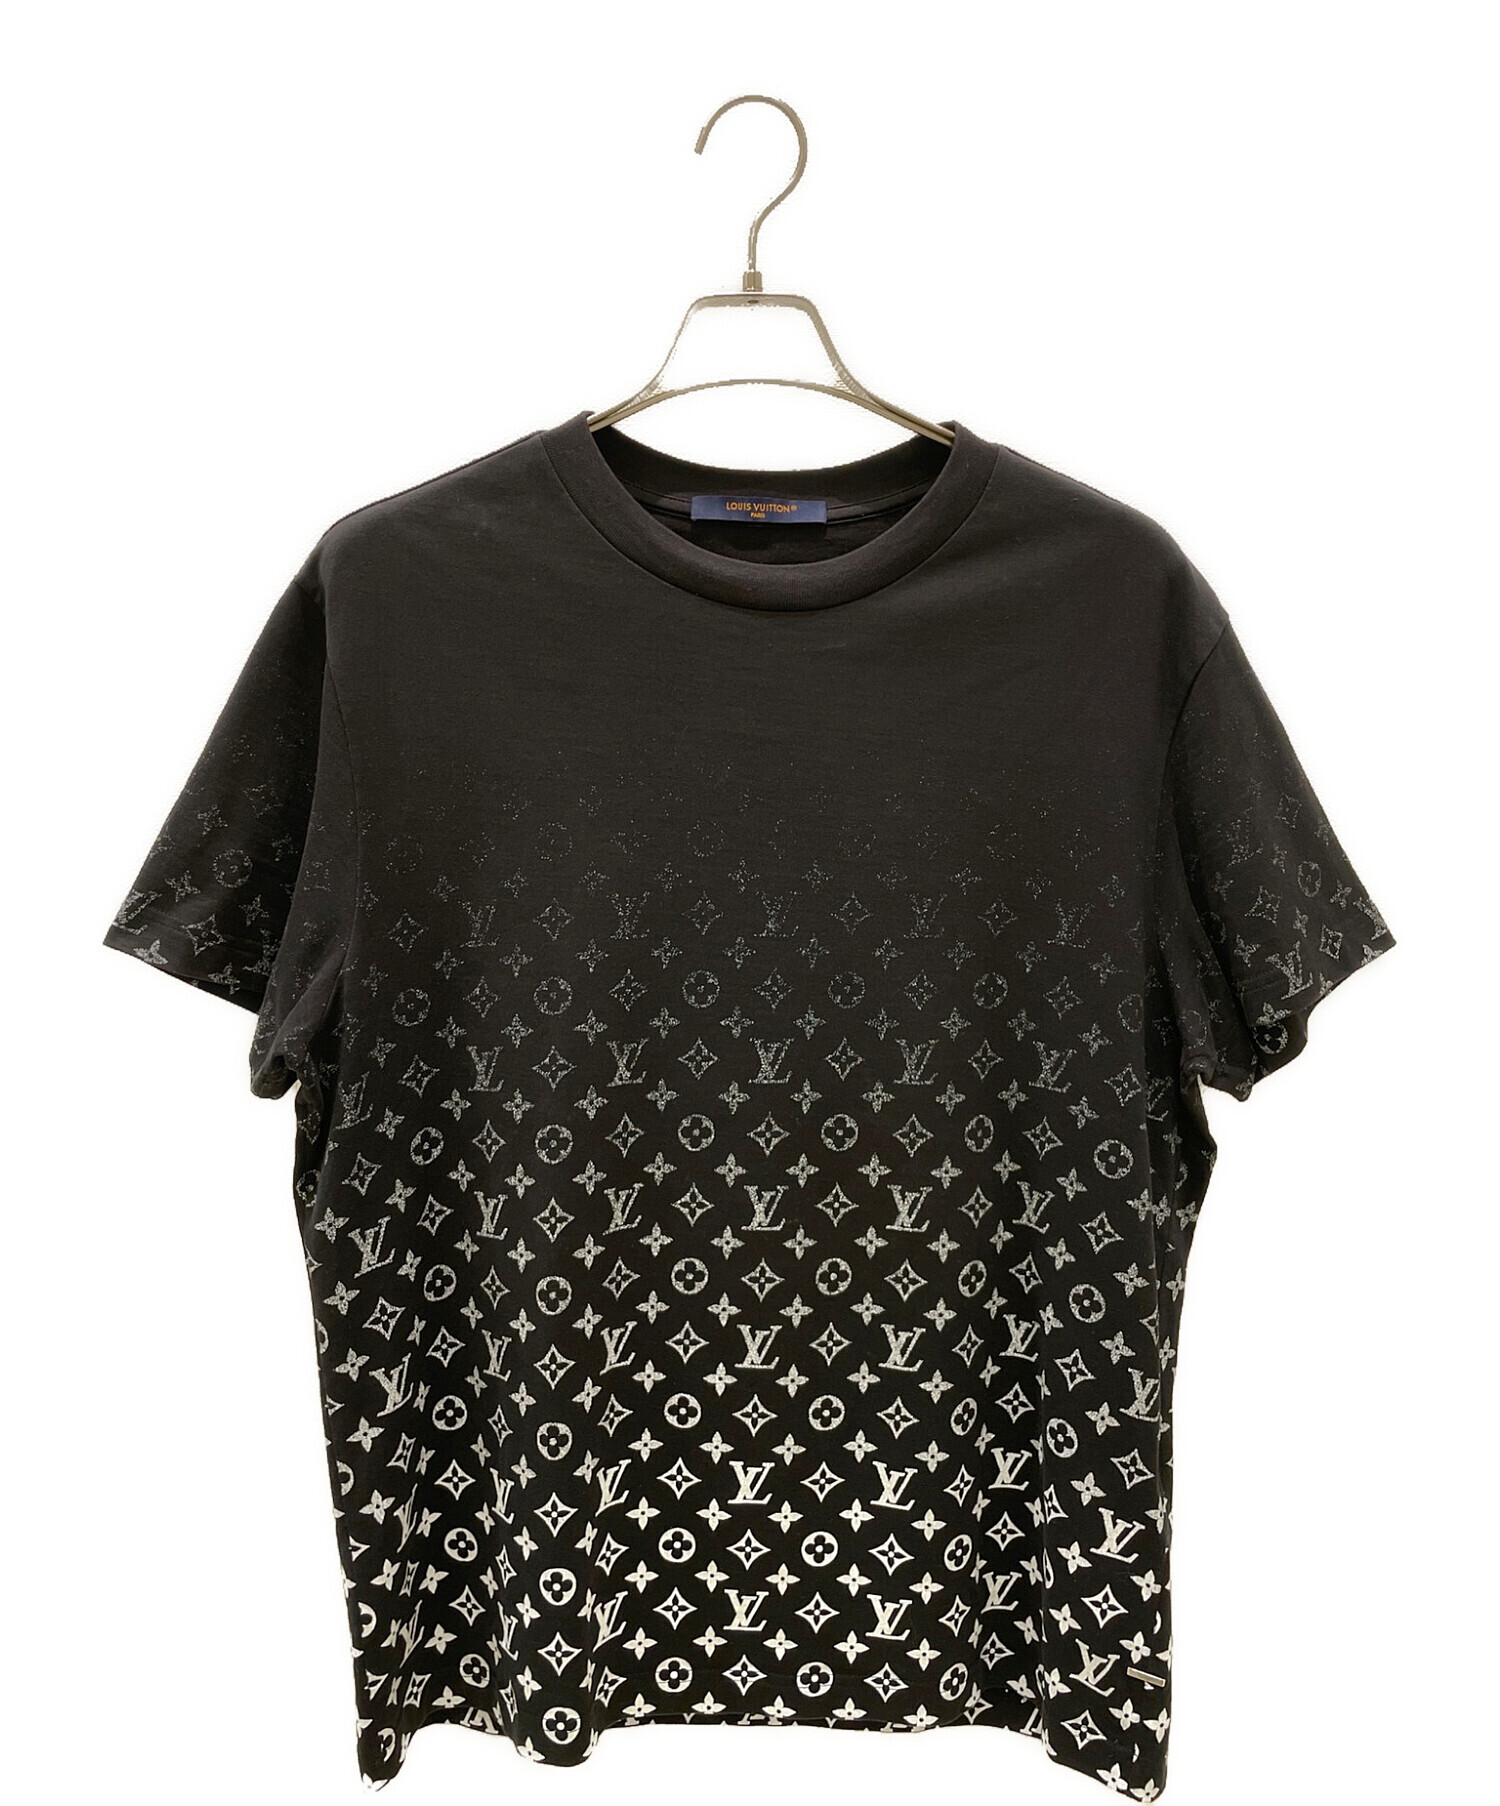 Louis Vuitton モノグラムグラディエントTシャツ M - Tシャツ 